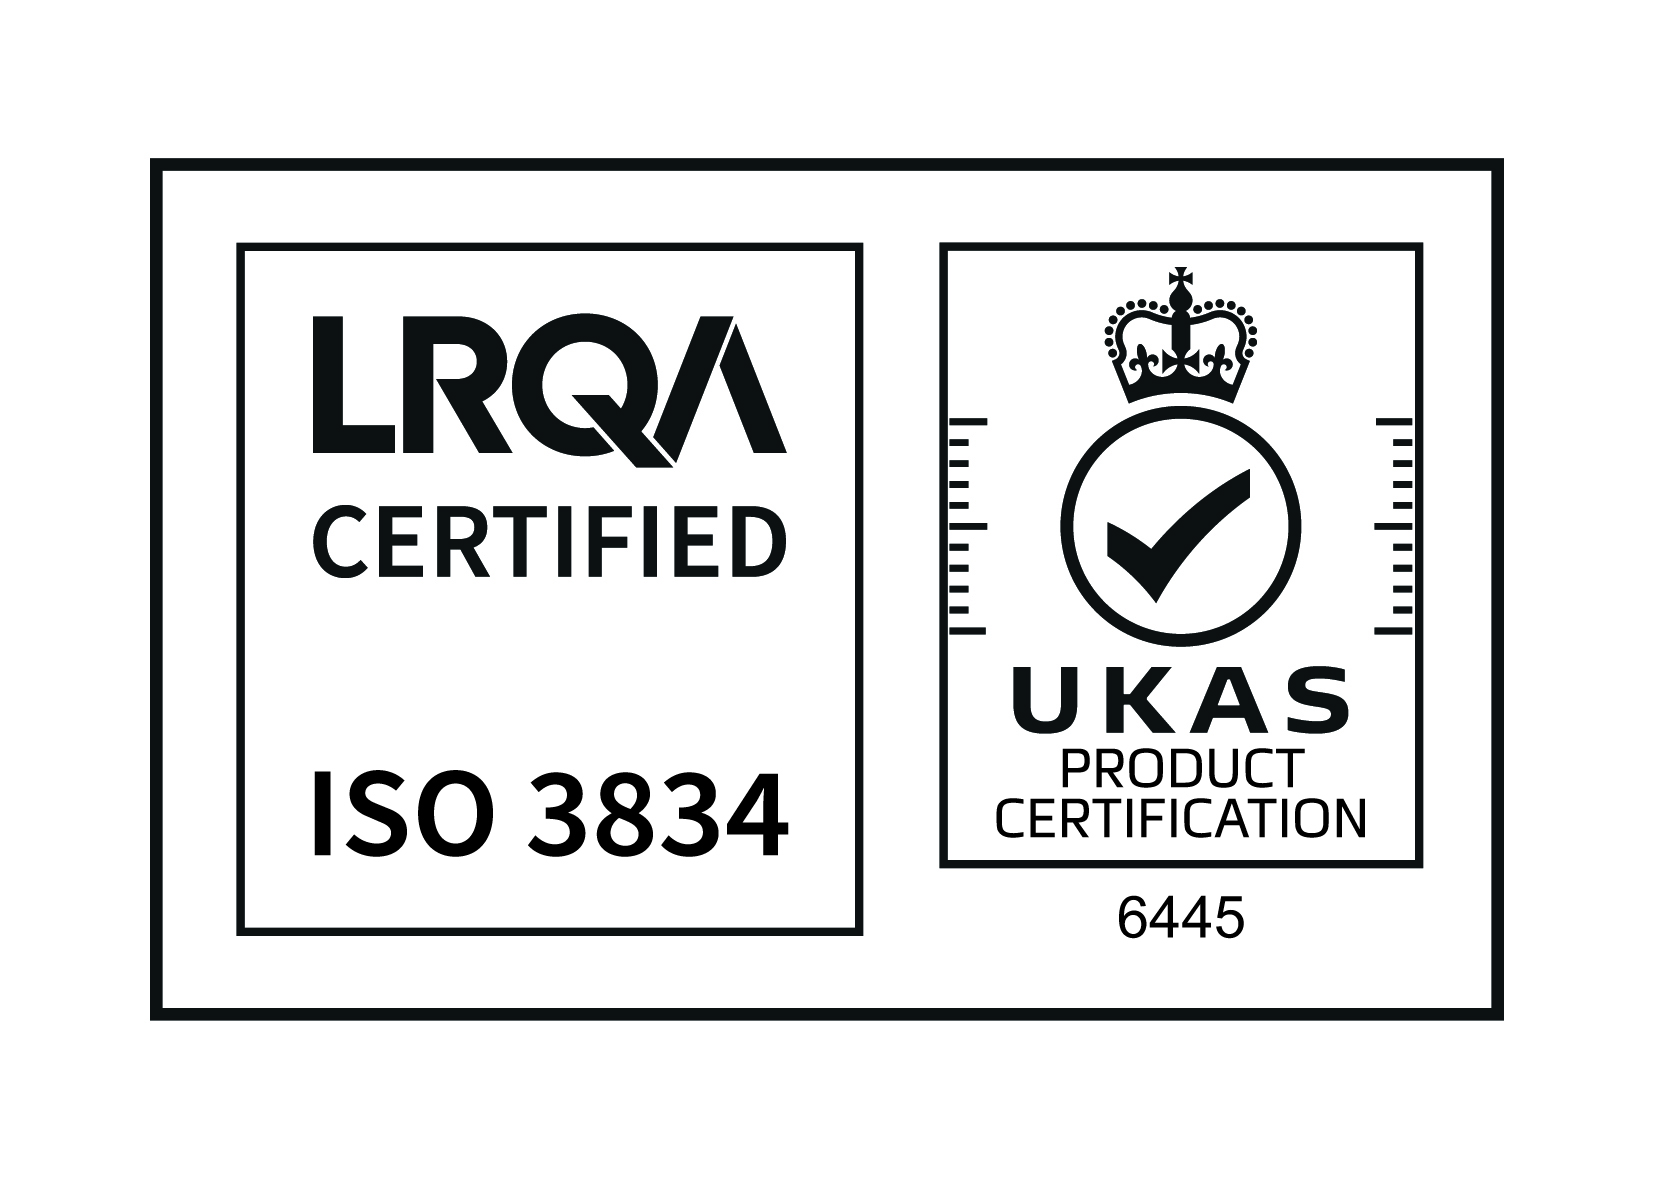 LRQA ISO 3834 UKAS